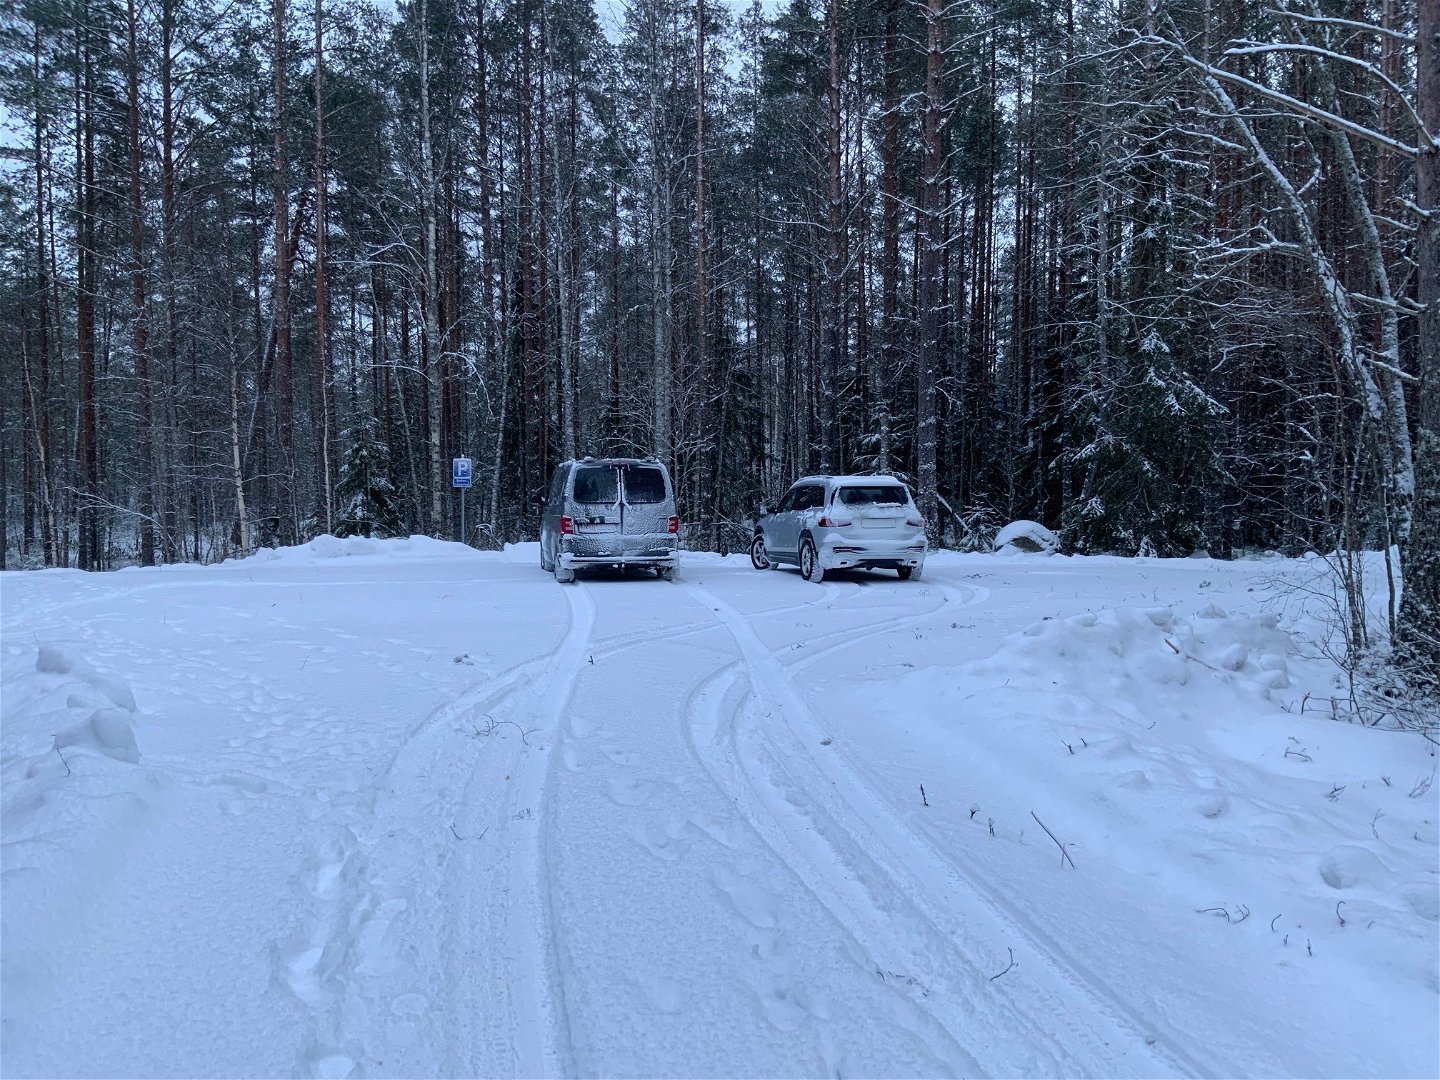 En snöig parkering där två bilar står parkerade.